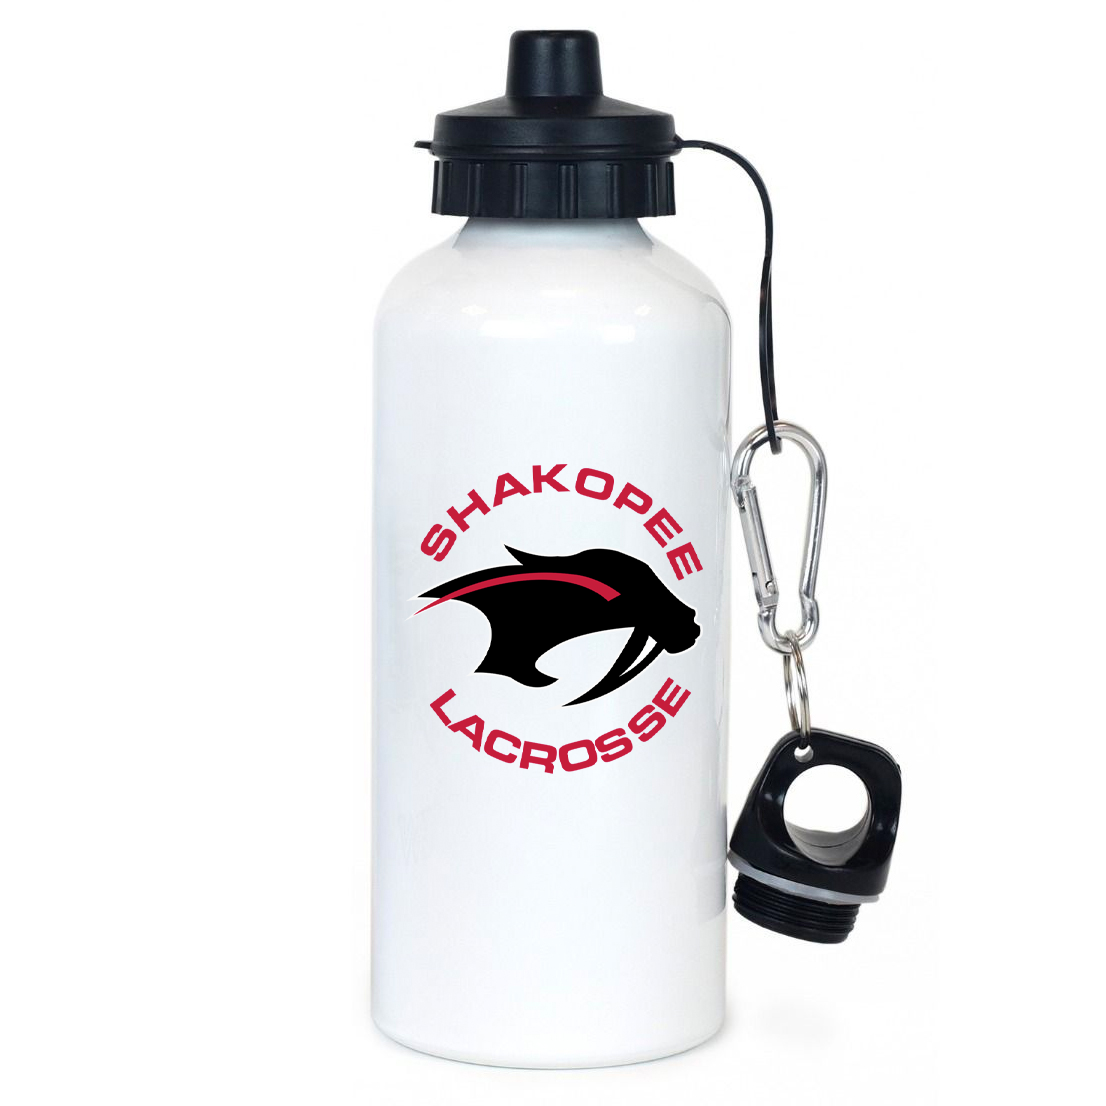 Shakopee Lacrosse Team Water Bottle